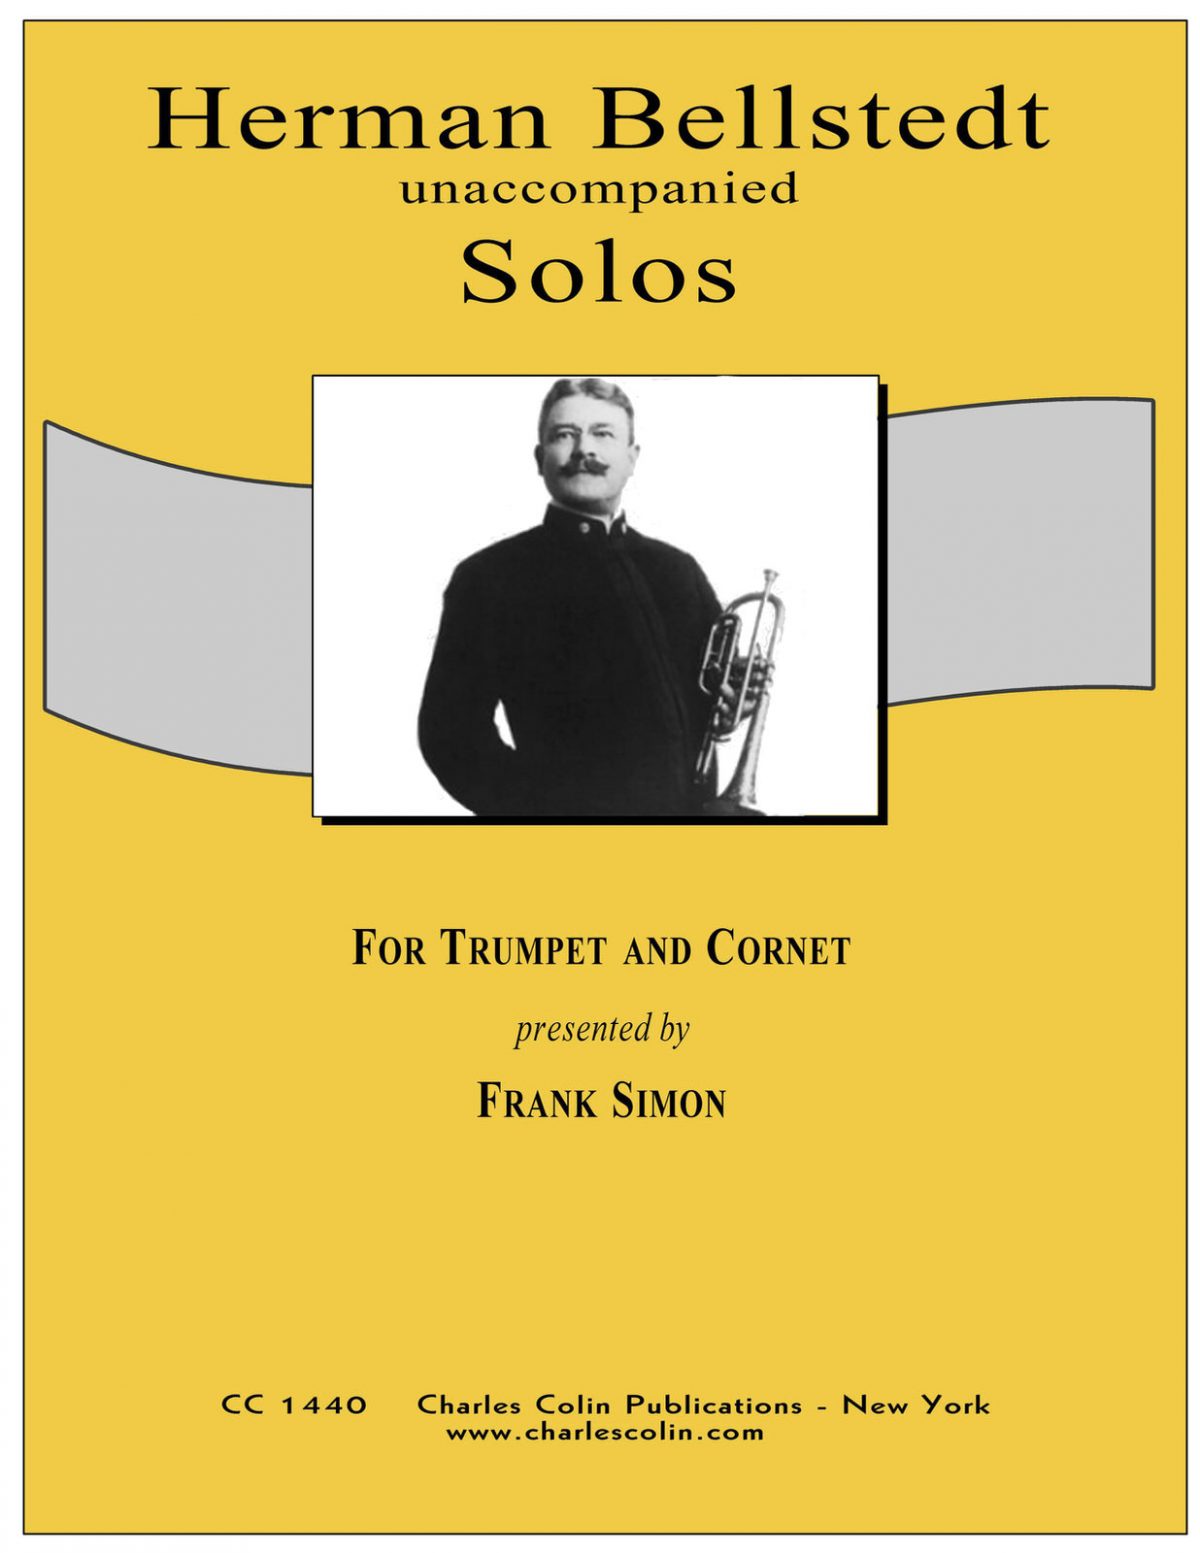 Bellstedt, Solos for Trumpet